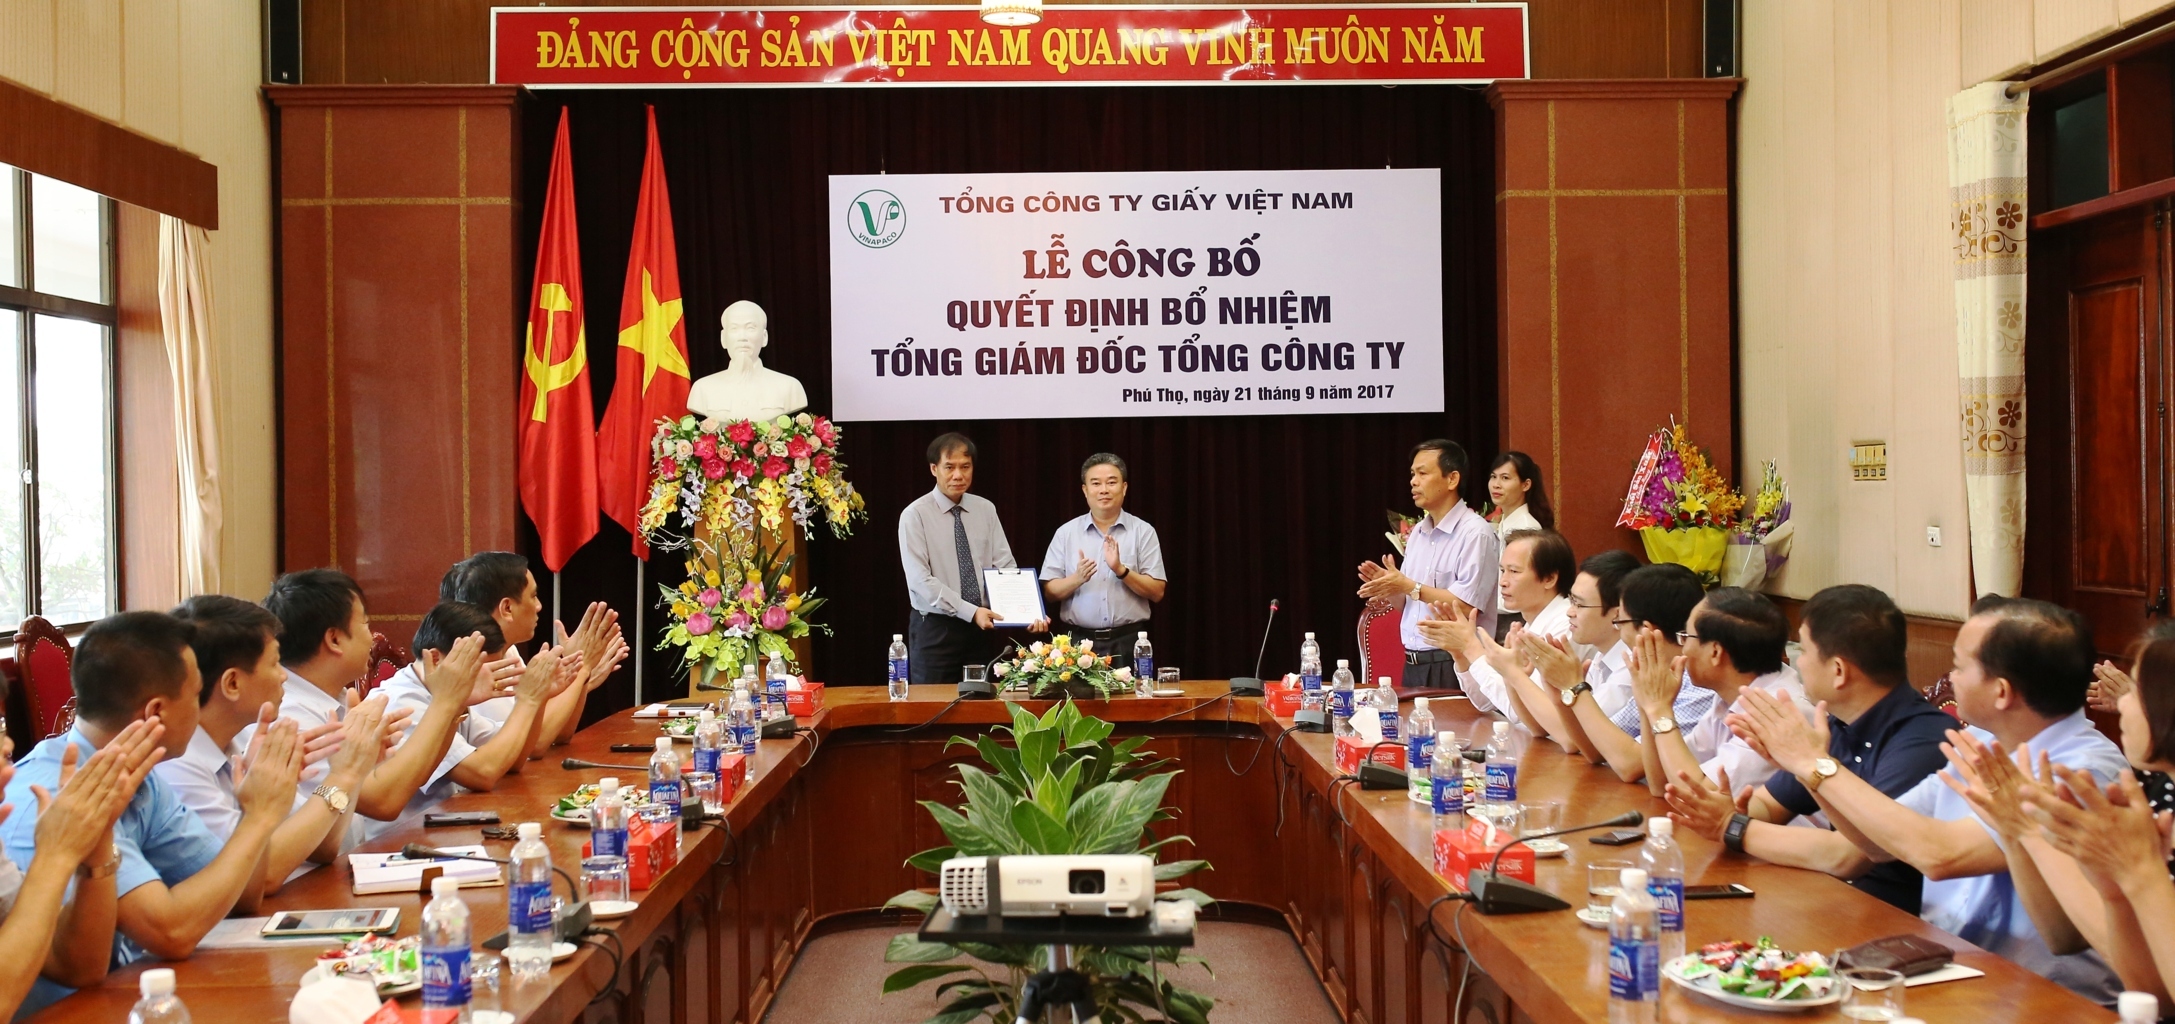 Tổng Công ty Giấy Việt Nam bất ngờ thay Tổng giám đốc